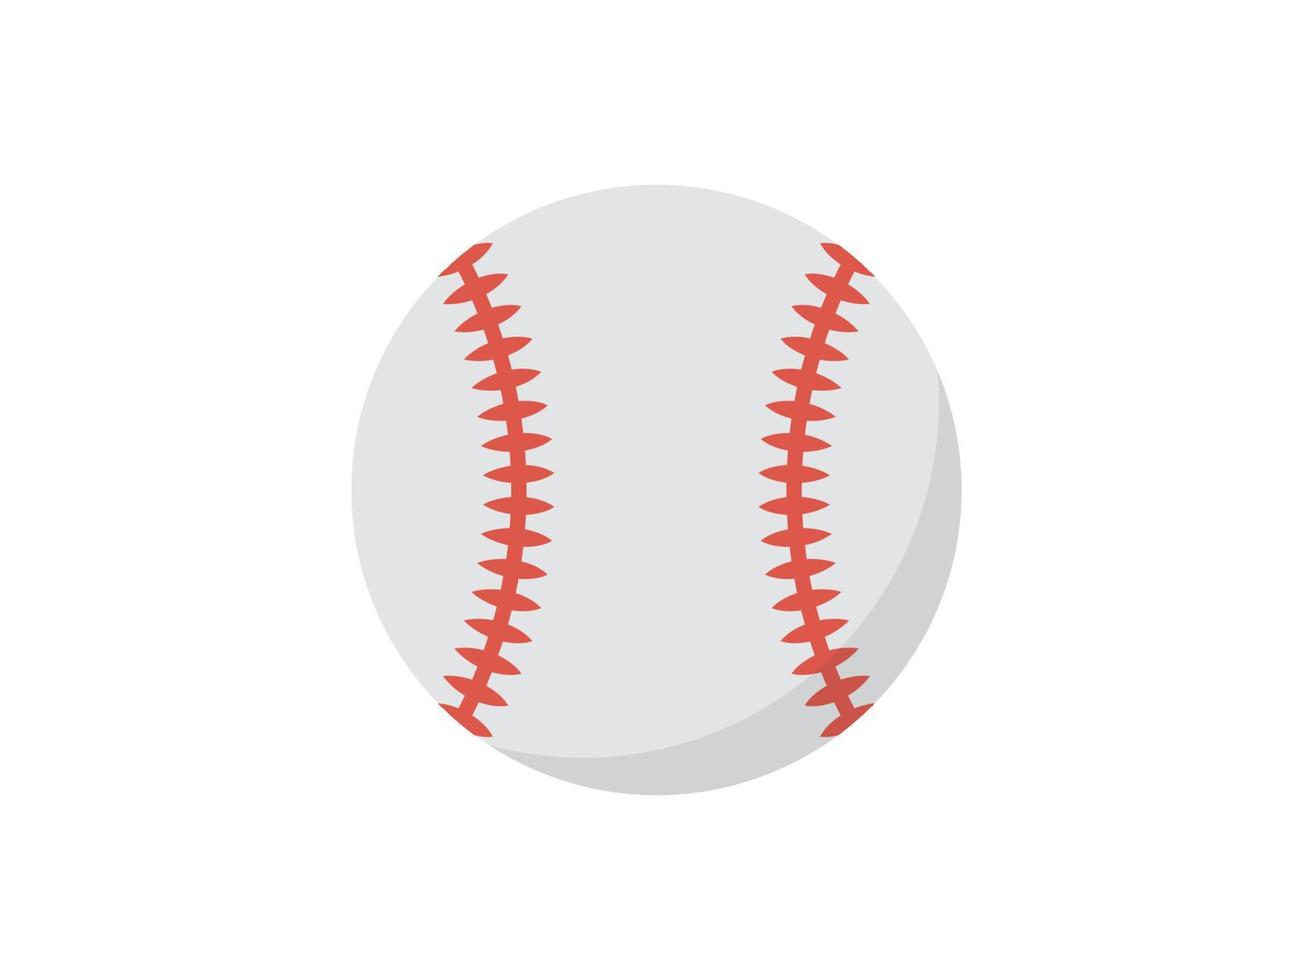 bola de beisebol envolta em couro branco e tiras vermelhas costuradas, equipamento esportivo, competição e ilustração vetorial plana de torneio. vetor